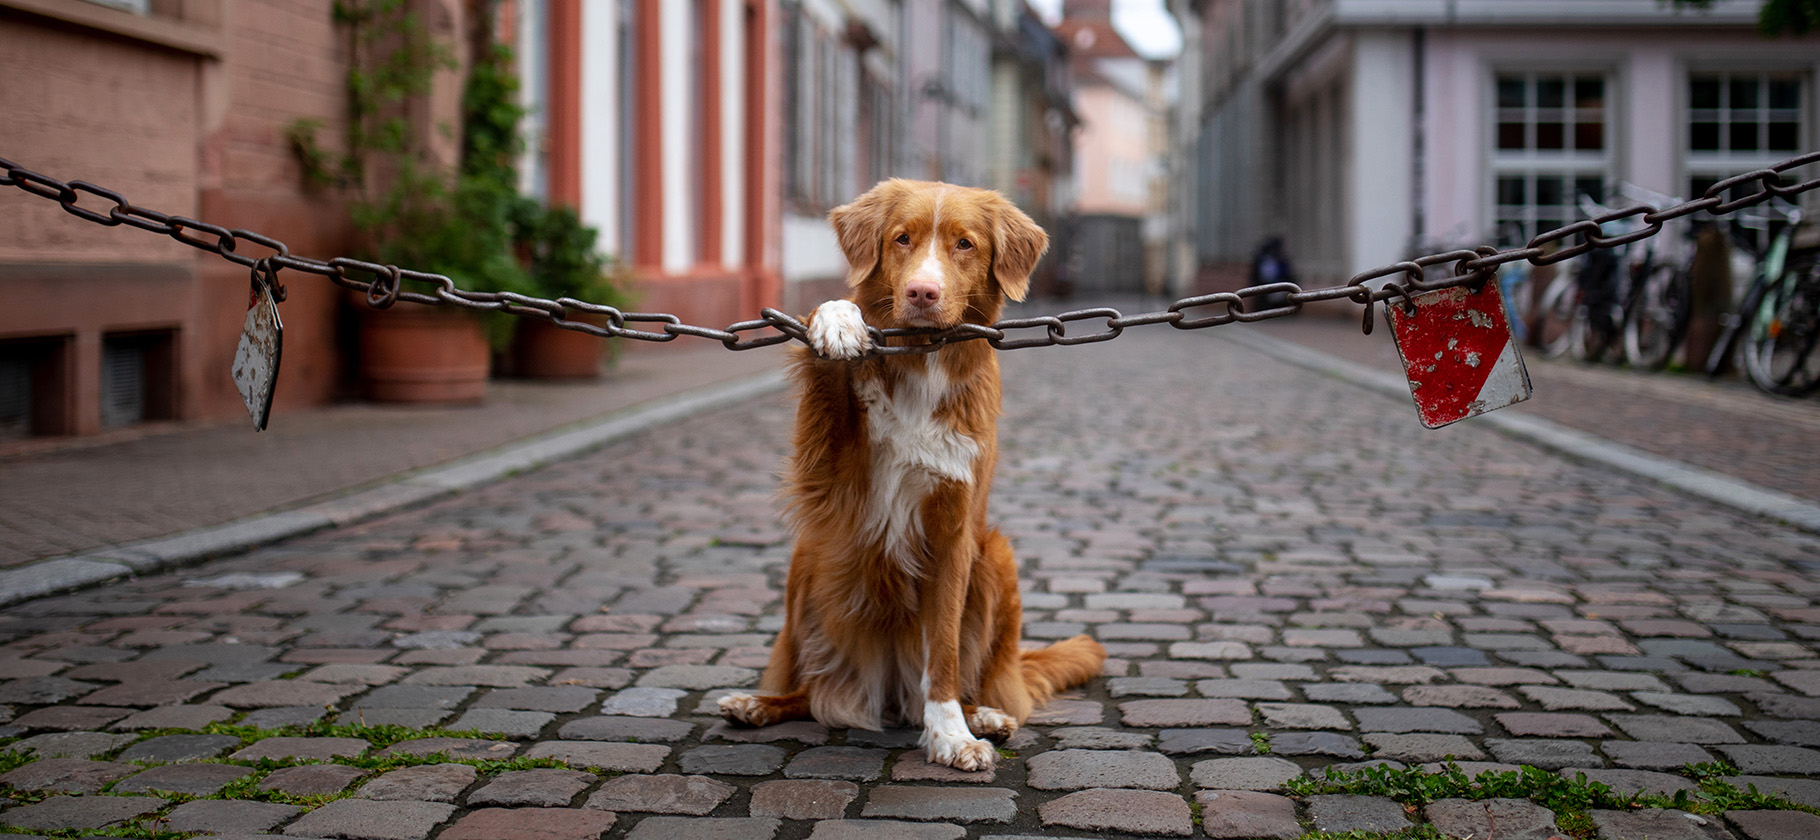 Тотальная бюрократия и налог на собак: чем плоха жизнь в Германии